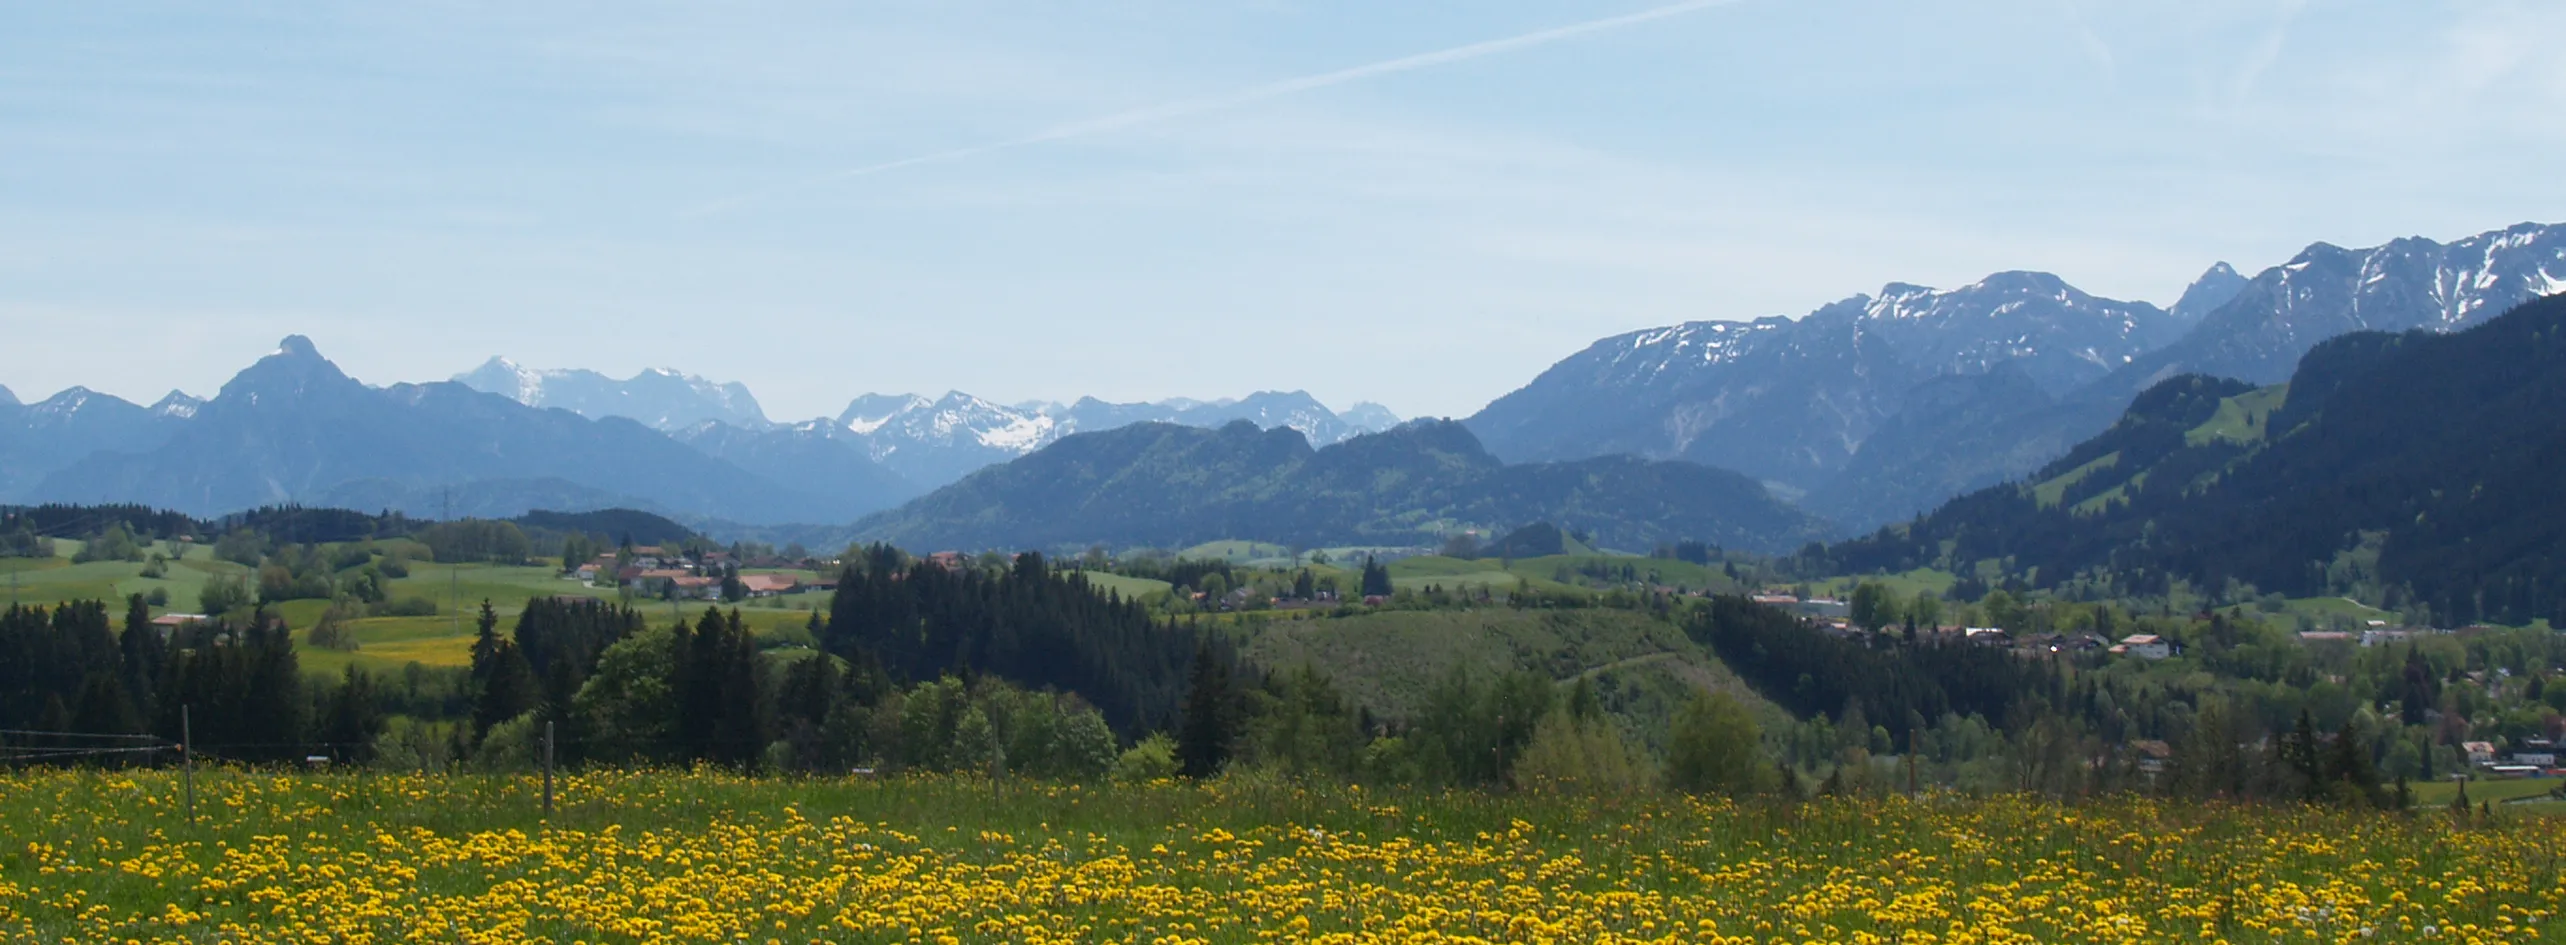 Ein Ausblick einer Wieser mit viele kleine gelbe Blumen und dem schönen Alpen Panorama.